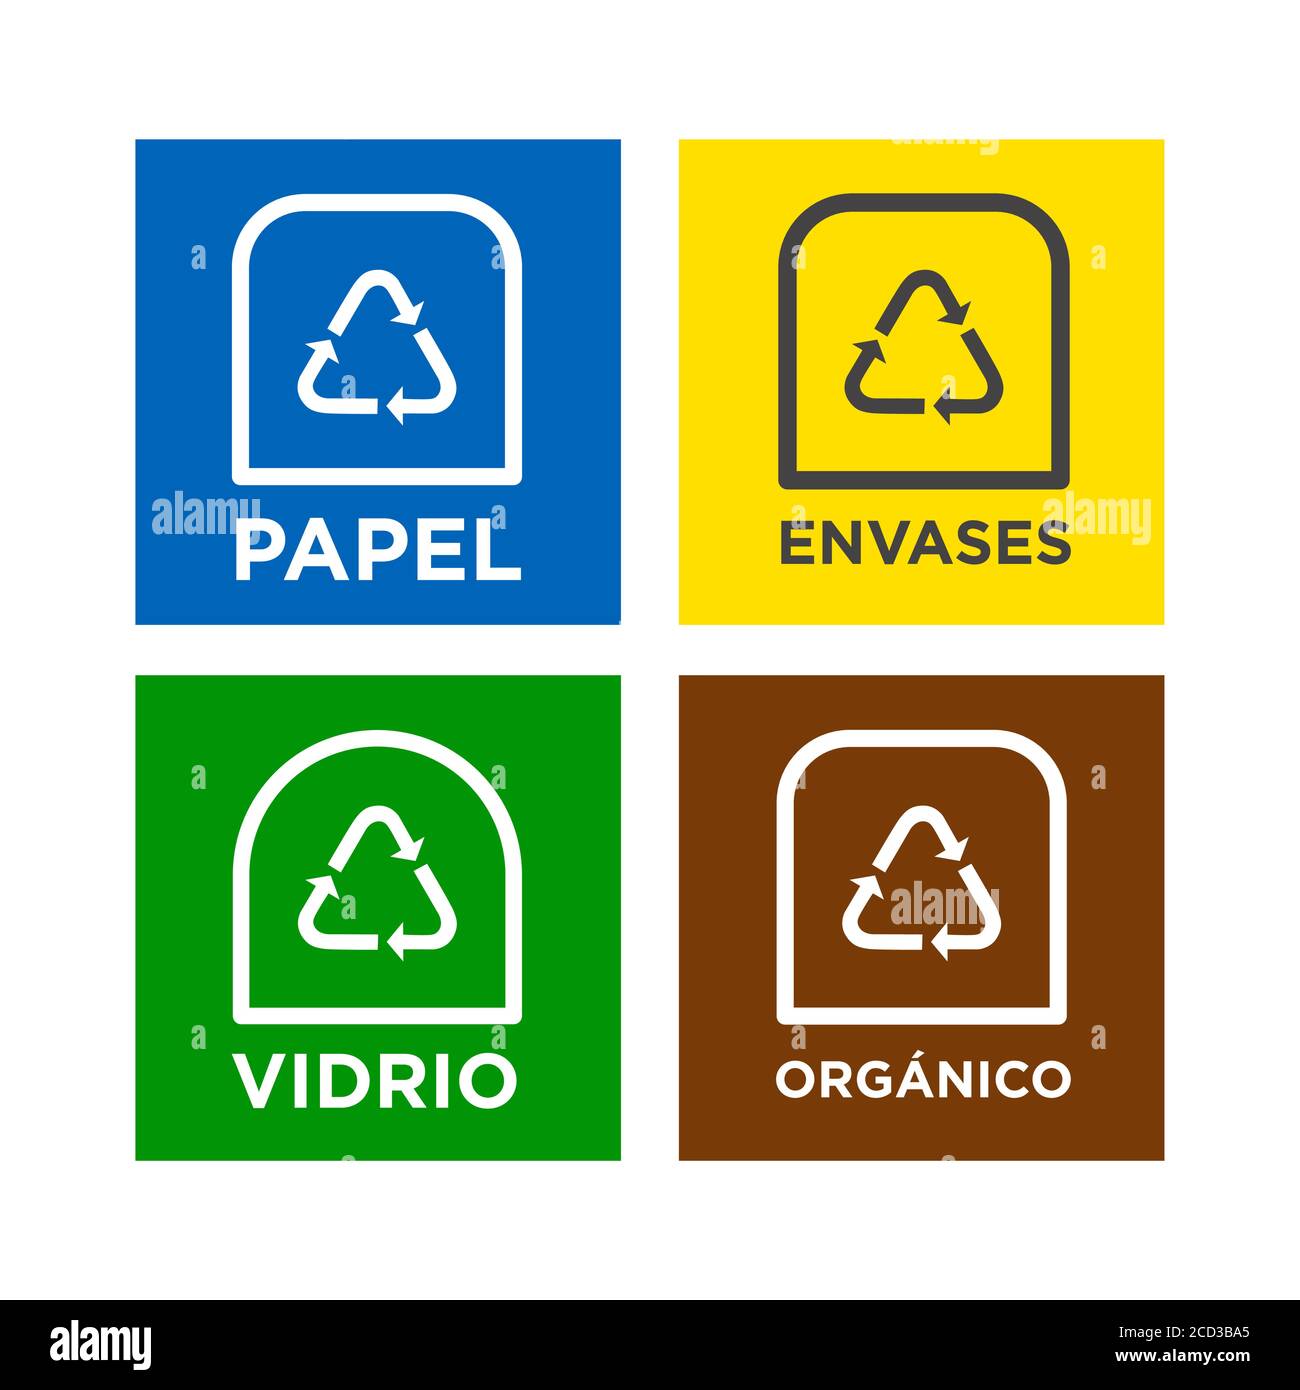 Informationssymbole für Produktetiketten zum Recycling. Symbole für Papier, Glas, Verpackungen und organisches Recycling in spanischer Sprache. Stock Vektor